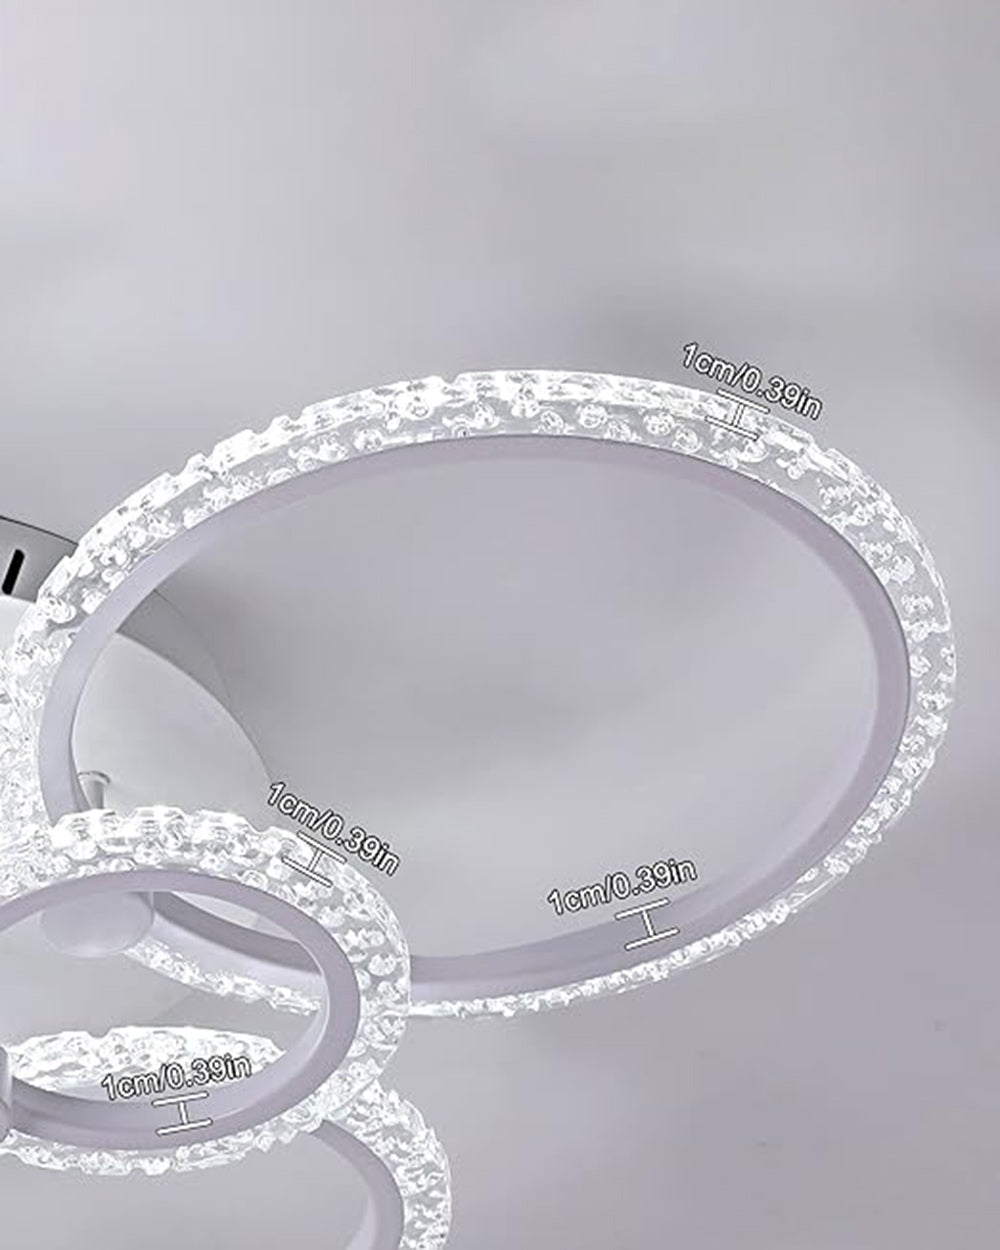 GreeLustr Cool White LED 6 Rings Ceiling  Light Chandelier